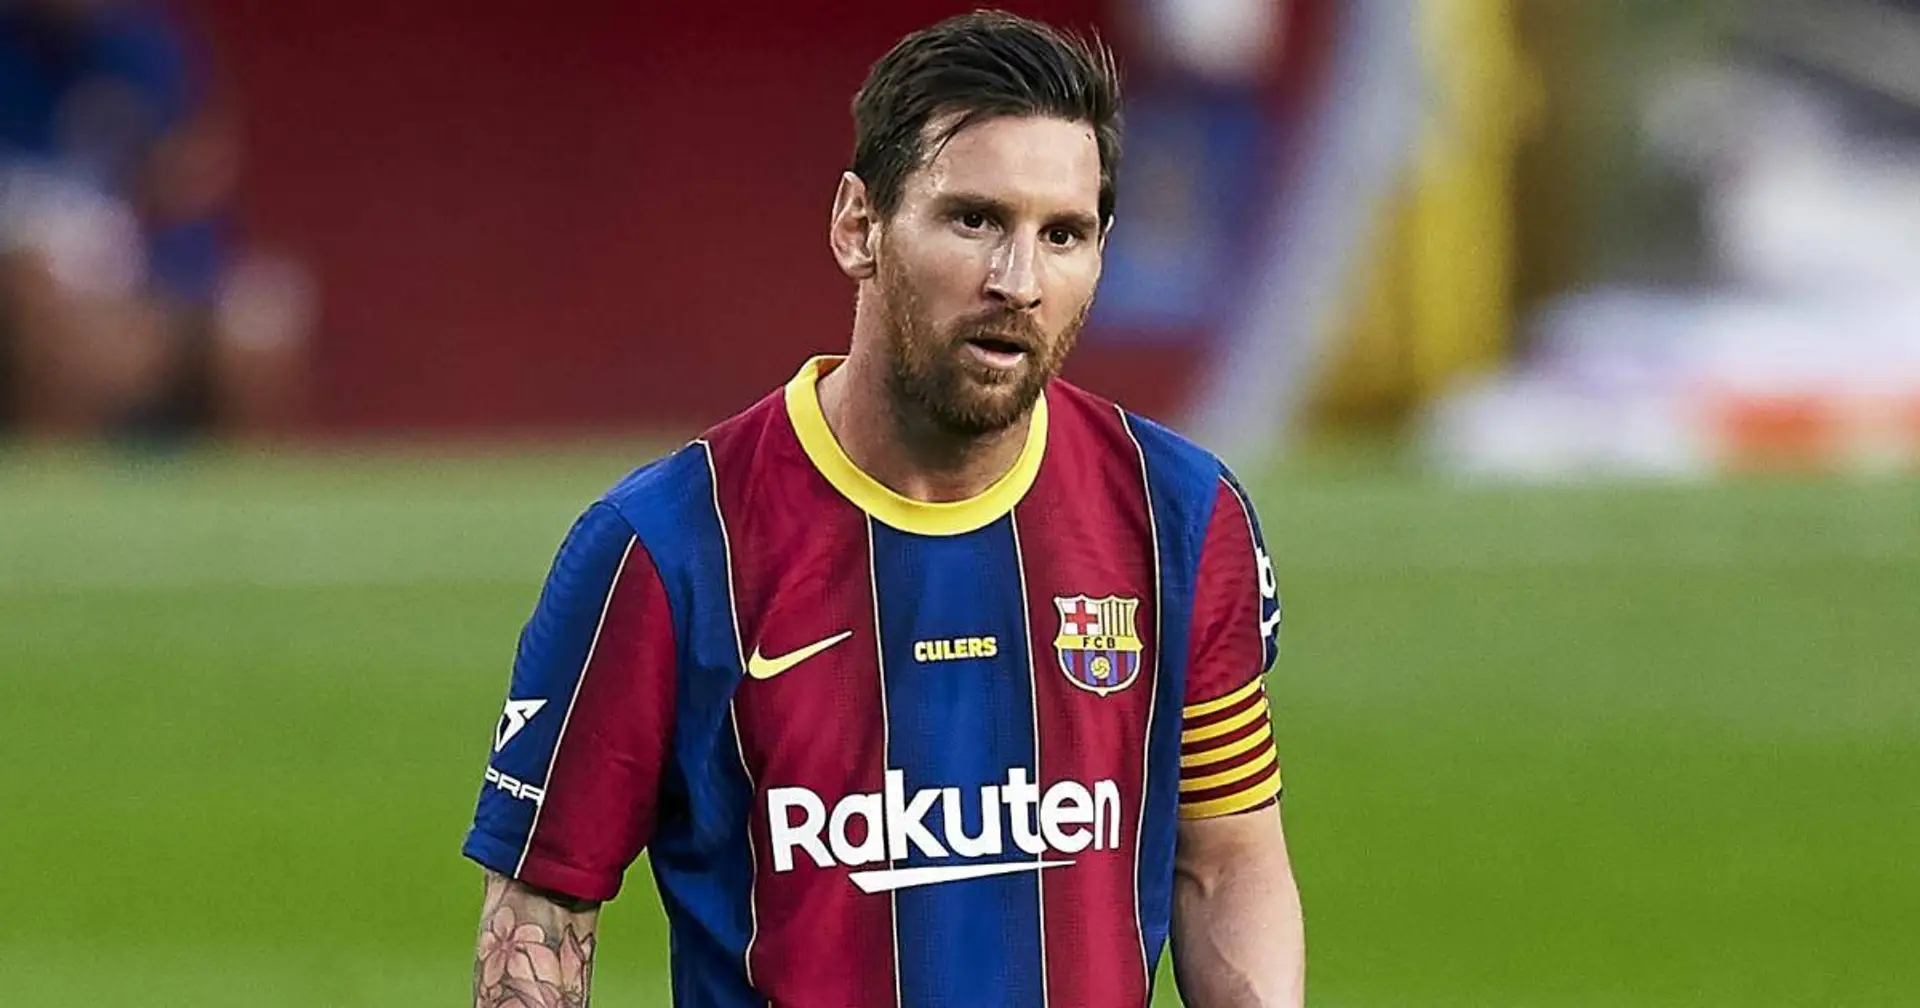 Quel déclin? Leo Messi en tête de 3 classements statistiques en Ligue des champions cette saison